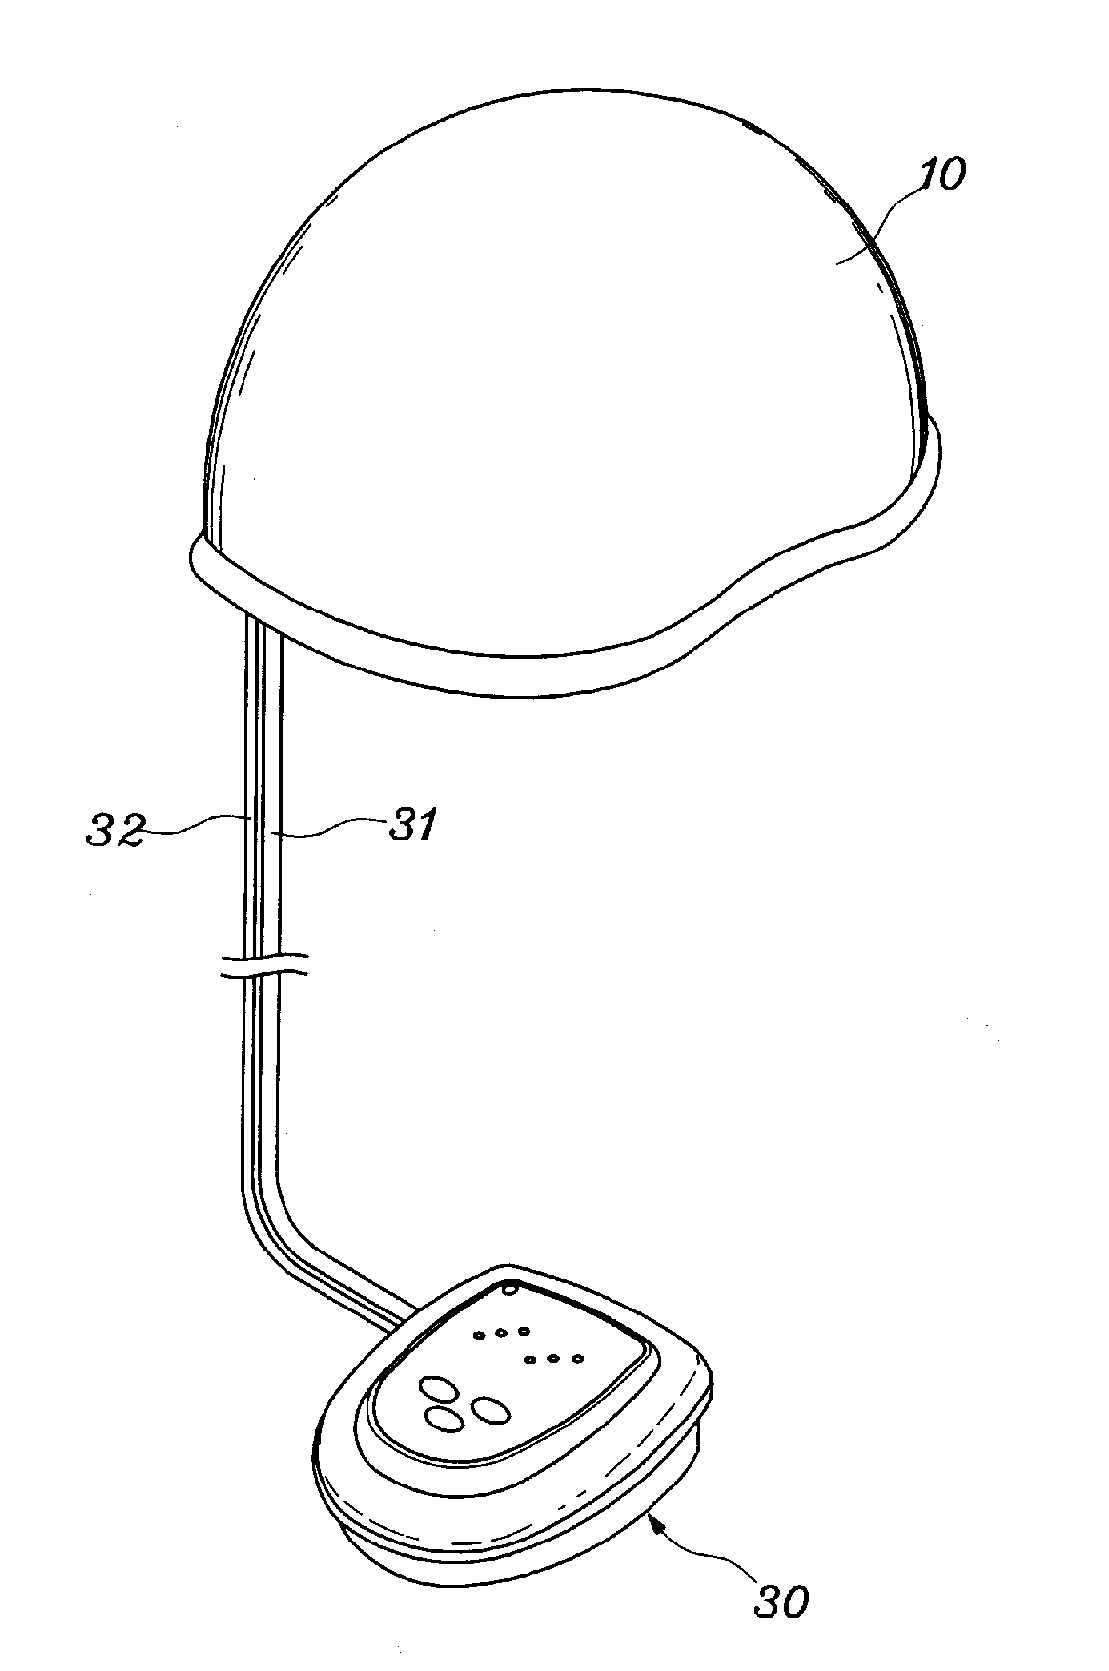 Apparatus for head acupressure using air pressure